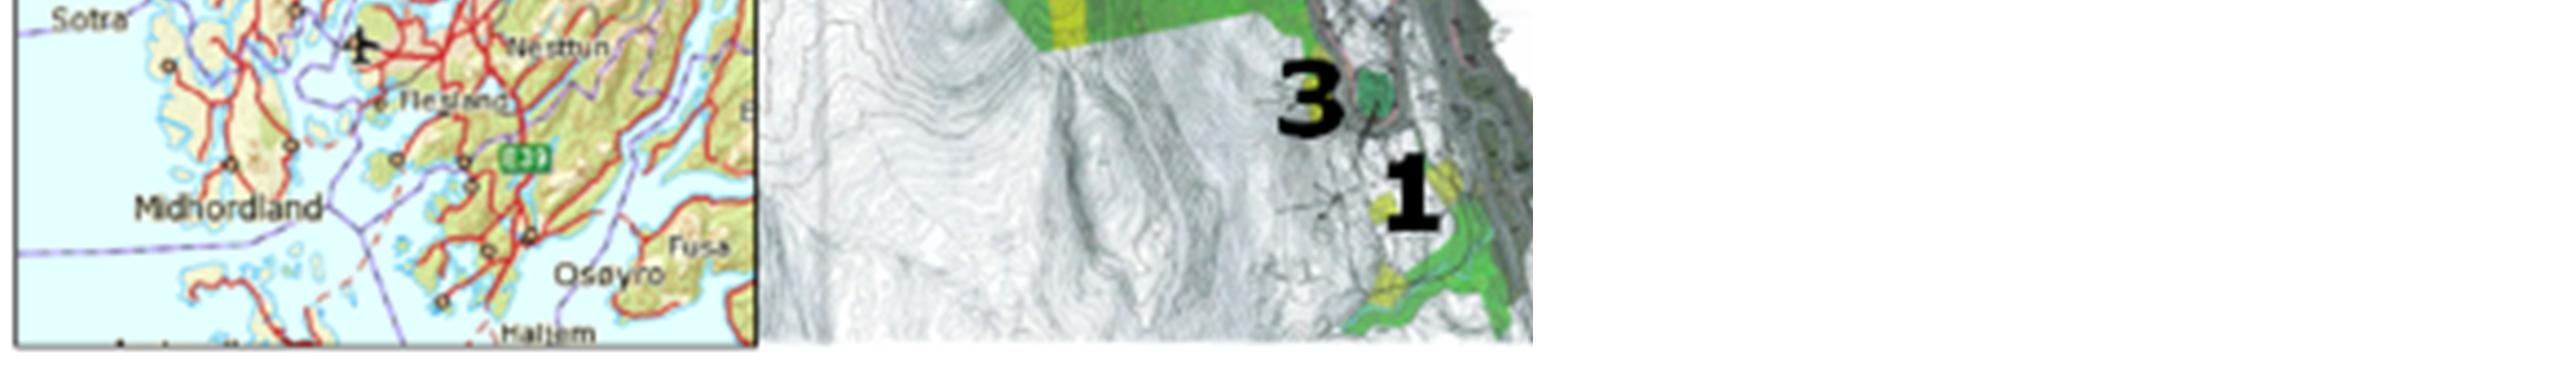 Geologisk rapport for områdeplan 1 av 26 1. INNLEDNING På oppdrag for Optimera AS har Rambøll Norge AS utarbeidet en geologisk rapport for områdeplan for Vårheia boligområde i Bergen.